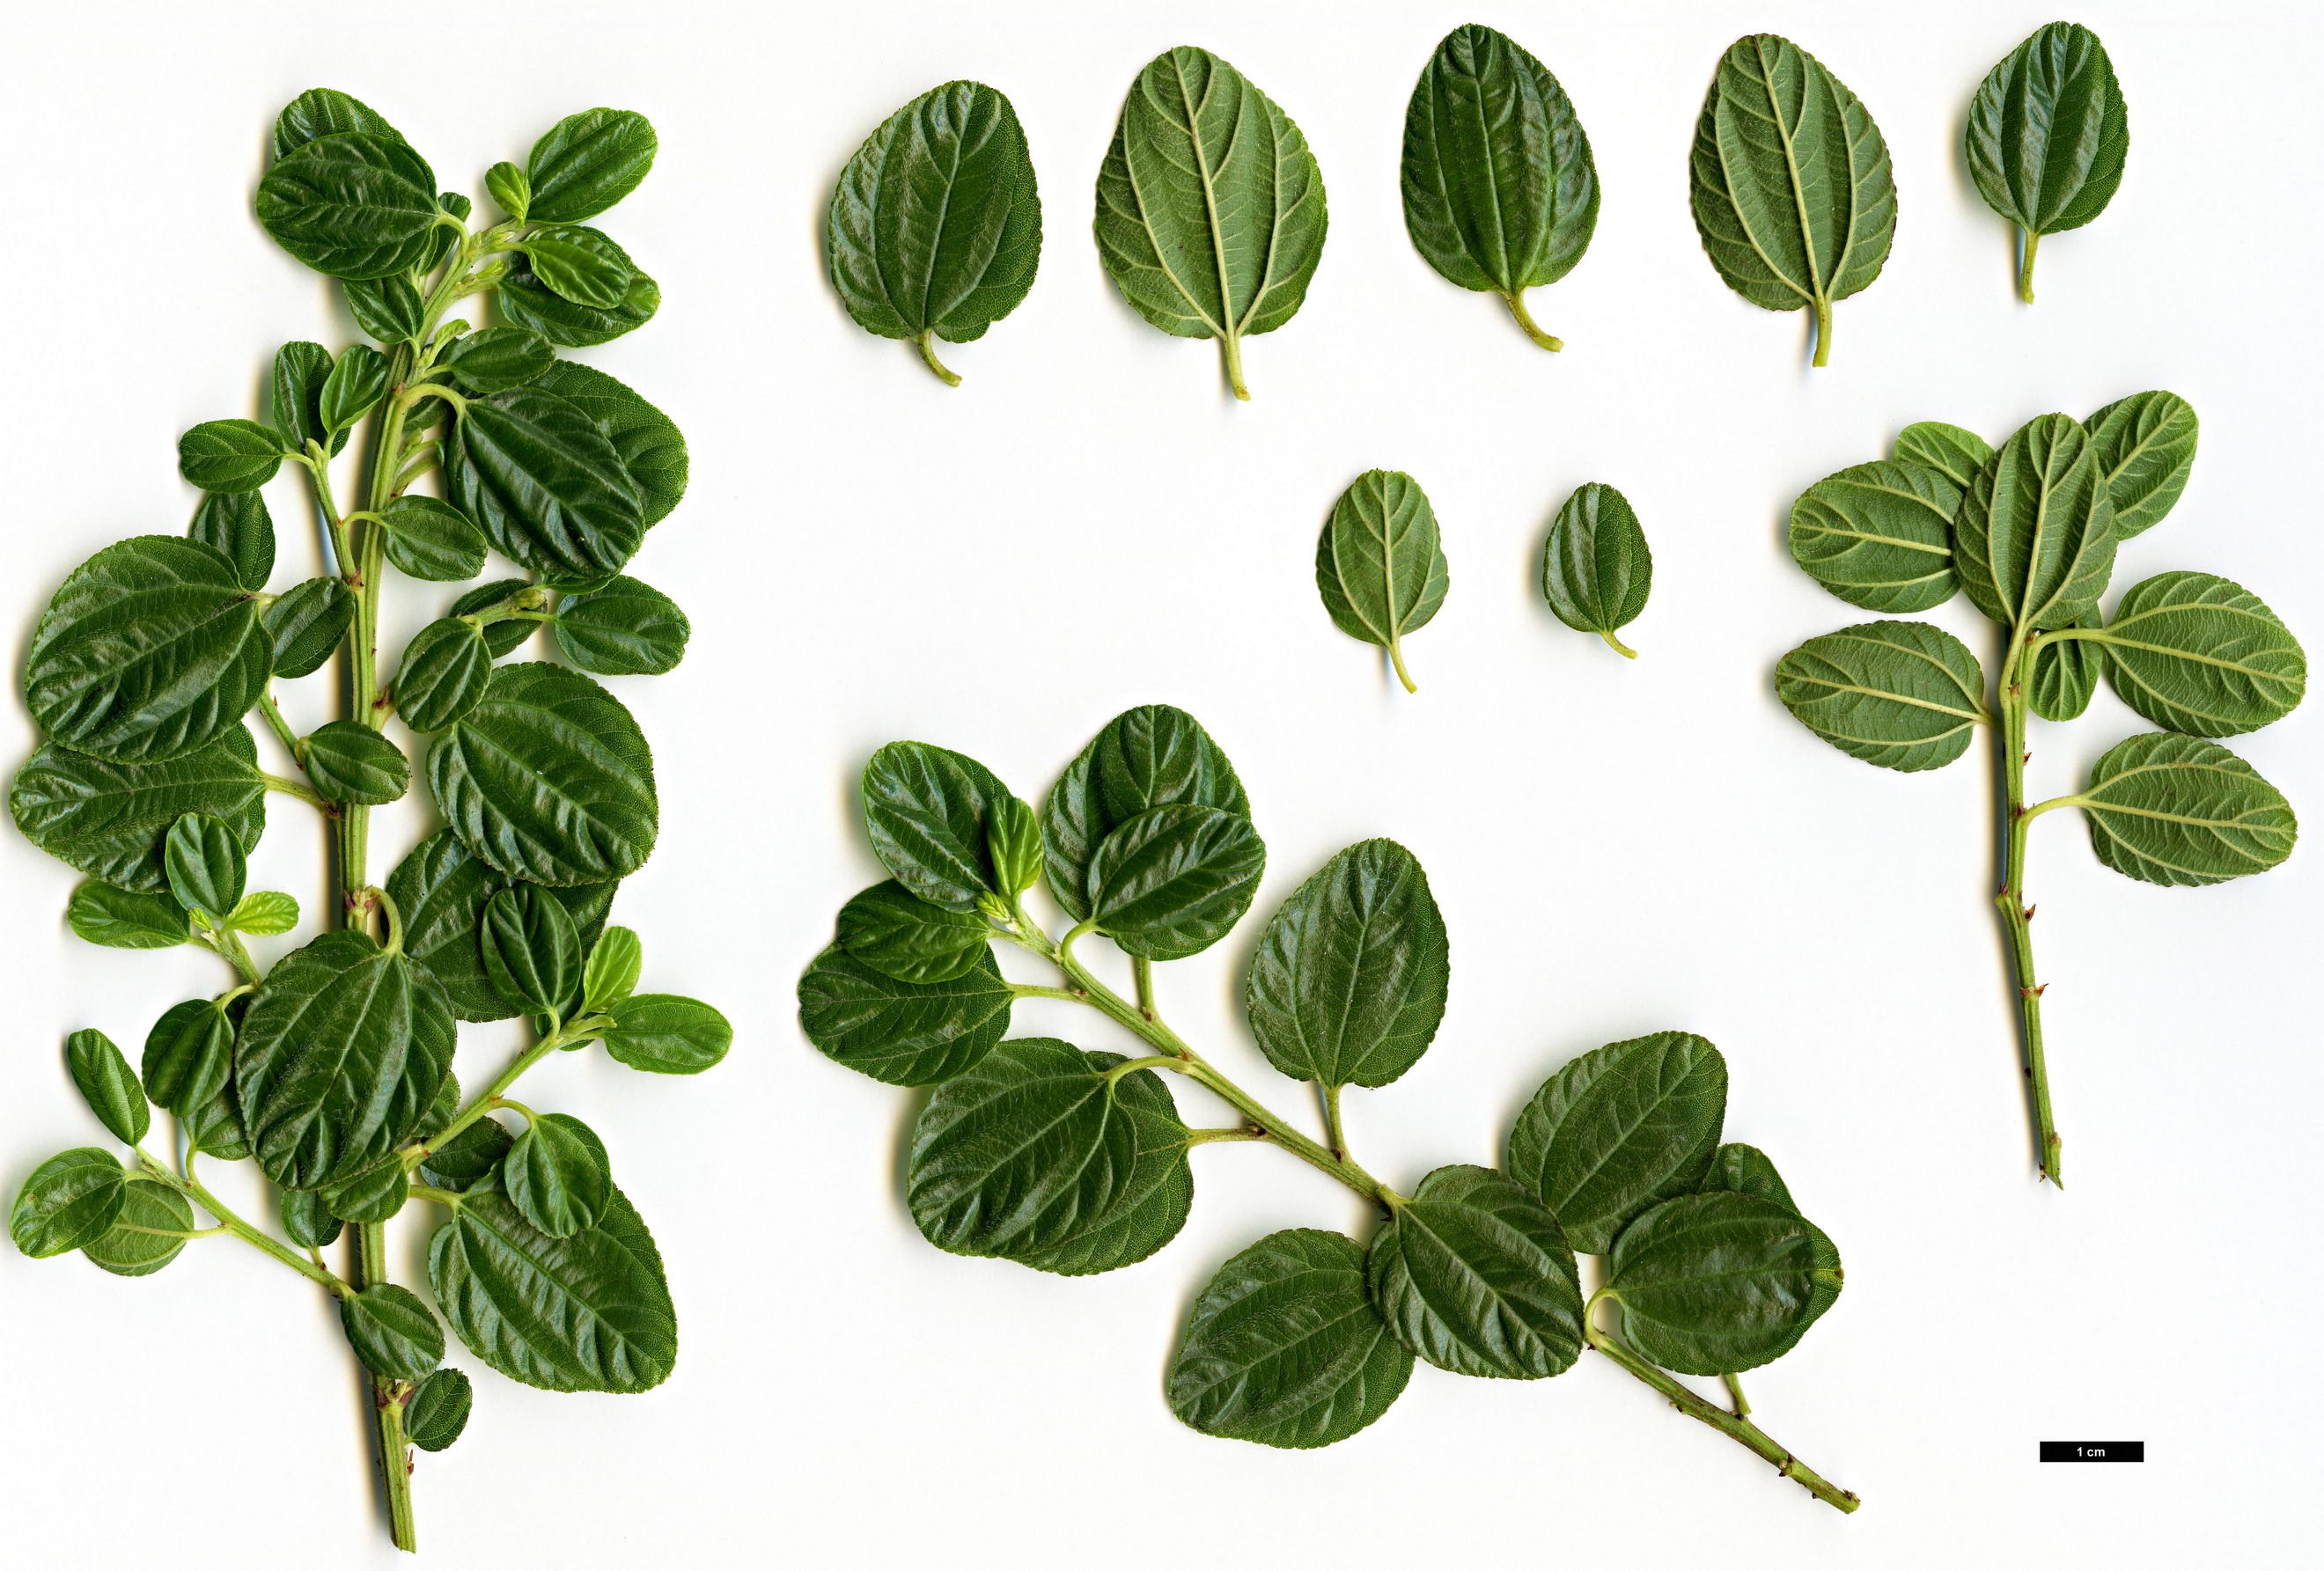 High resolution image: Family: Rhamnaceae - Genus: Ceanothus - Taxon: prostratus